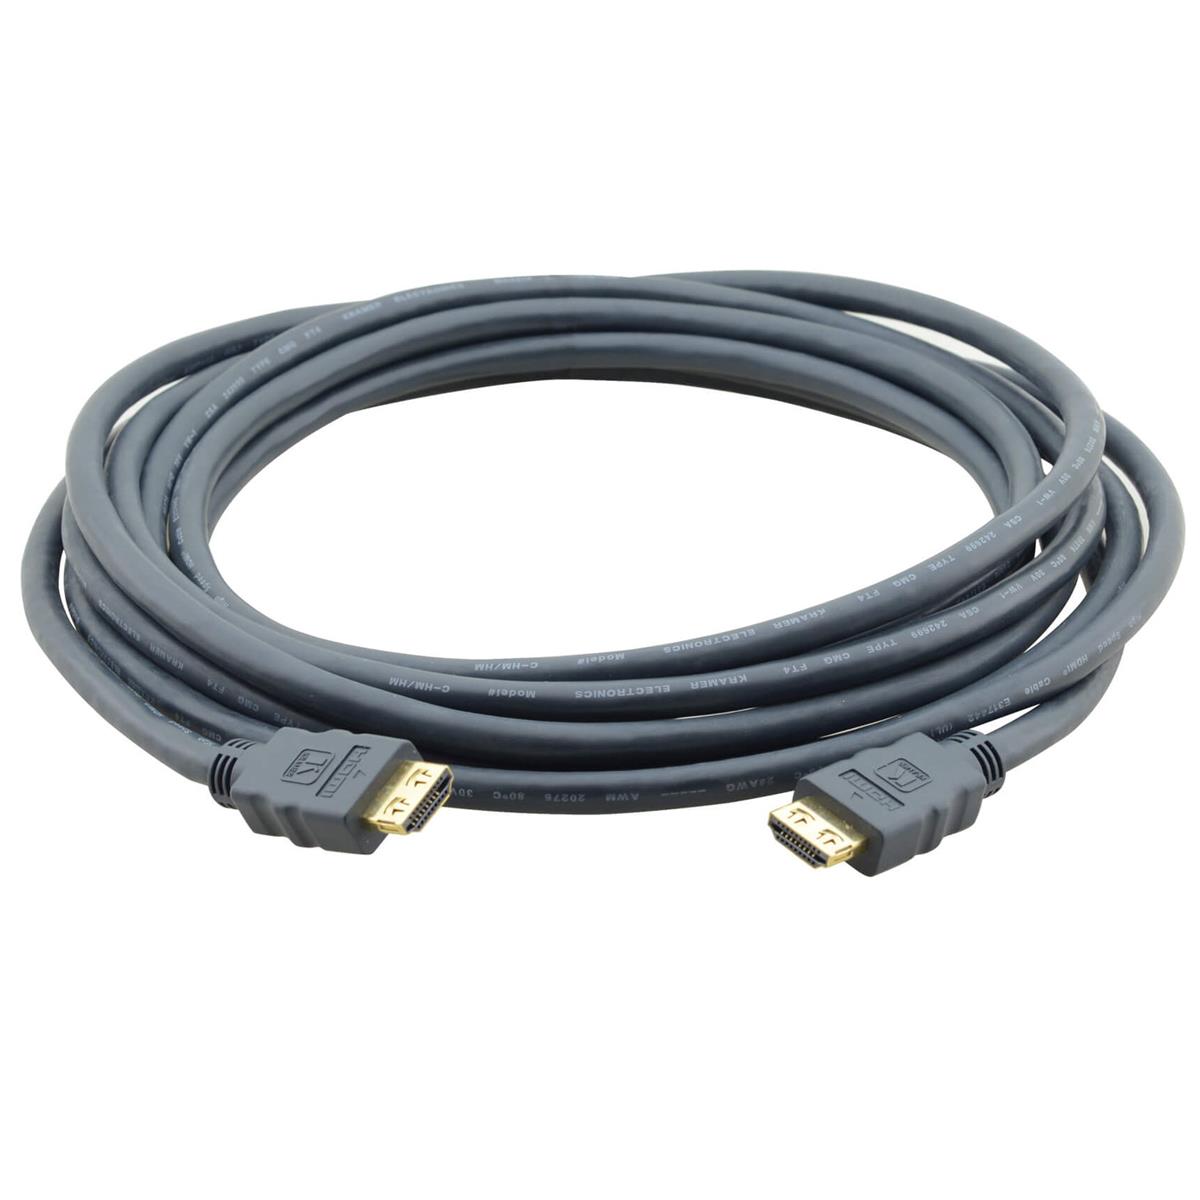 Стандартный кабель Kramer Electronics HDMI (M) — HDMI (M), 10 футов, № 97-0101010